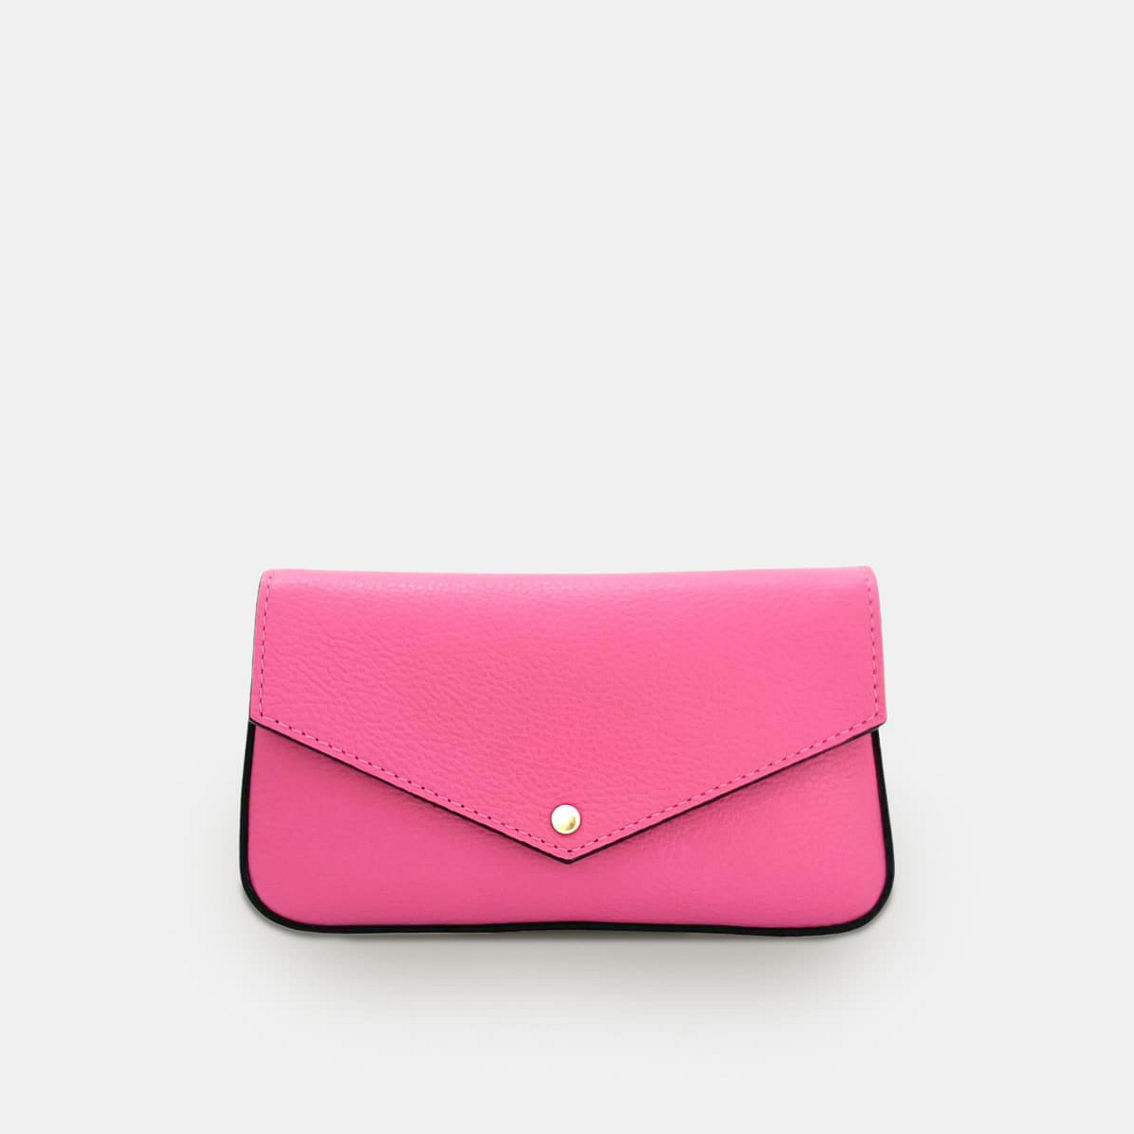 The Munro Barbie Pink Leather Shoulder Bag - Image 4 of 5